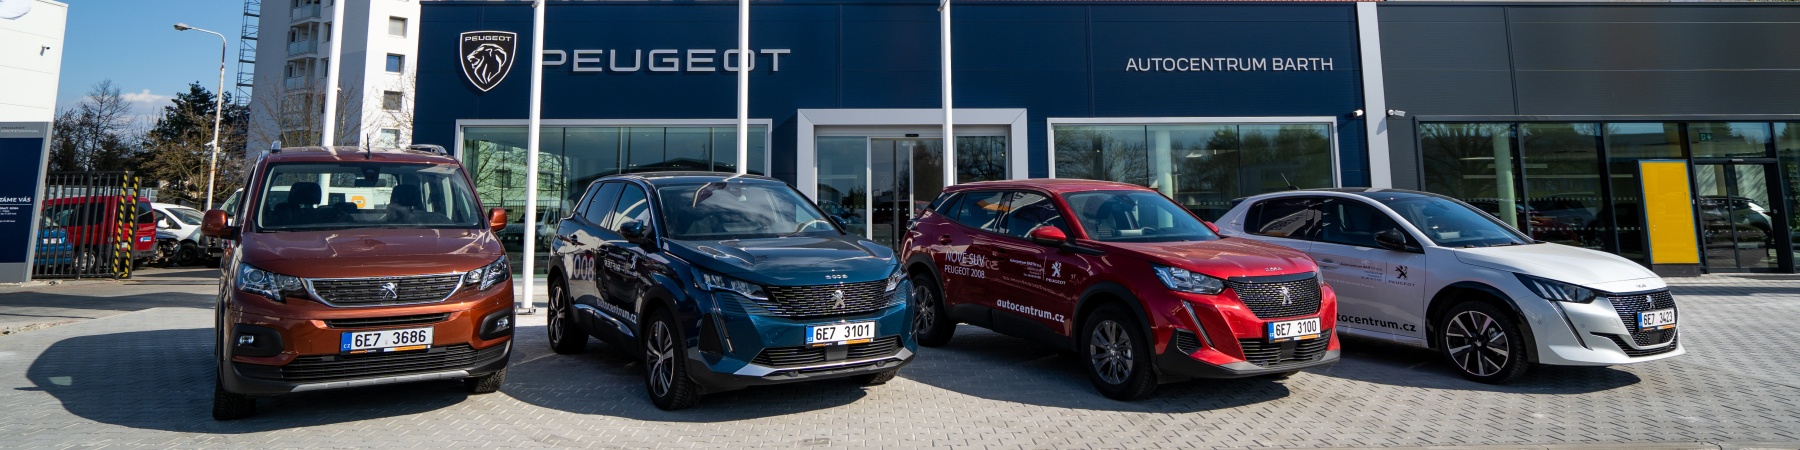 Peugeot - nový showroom